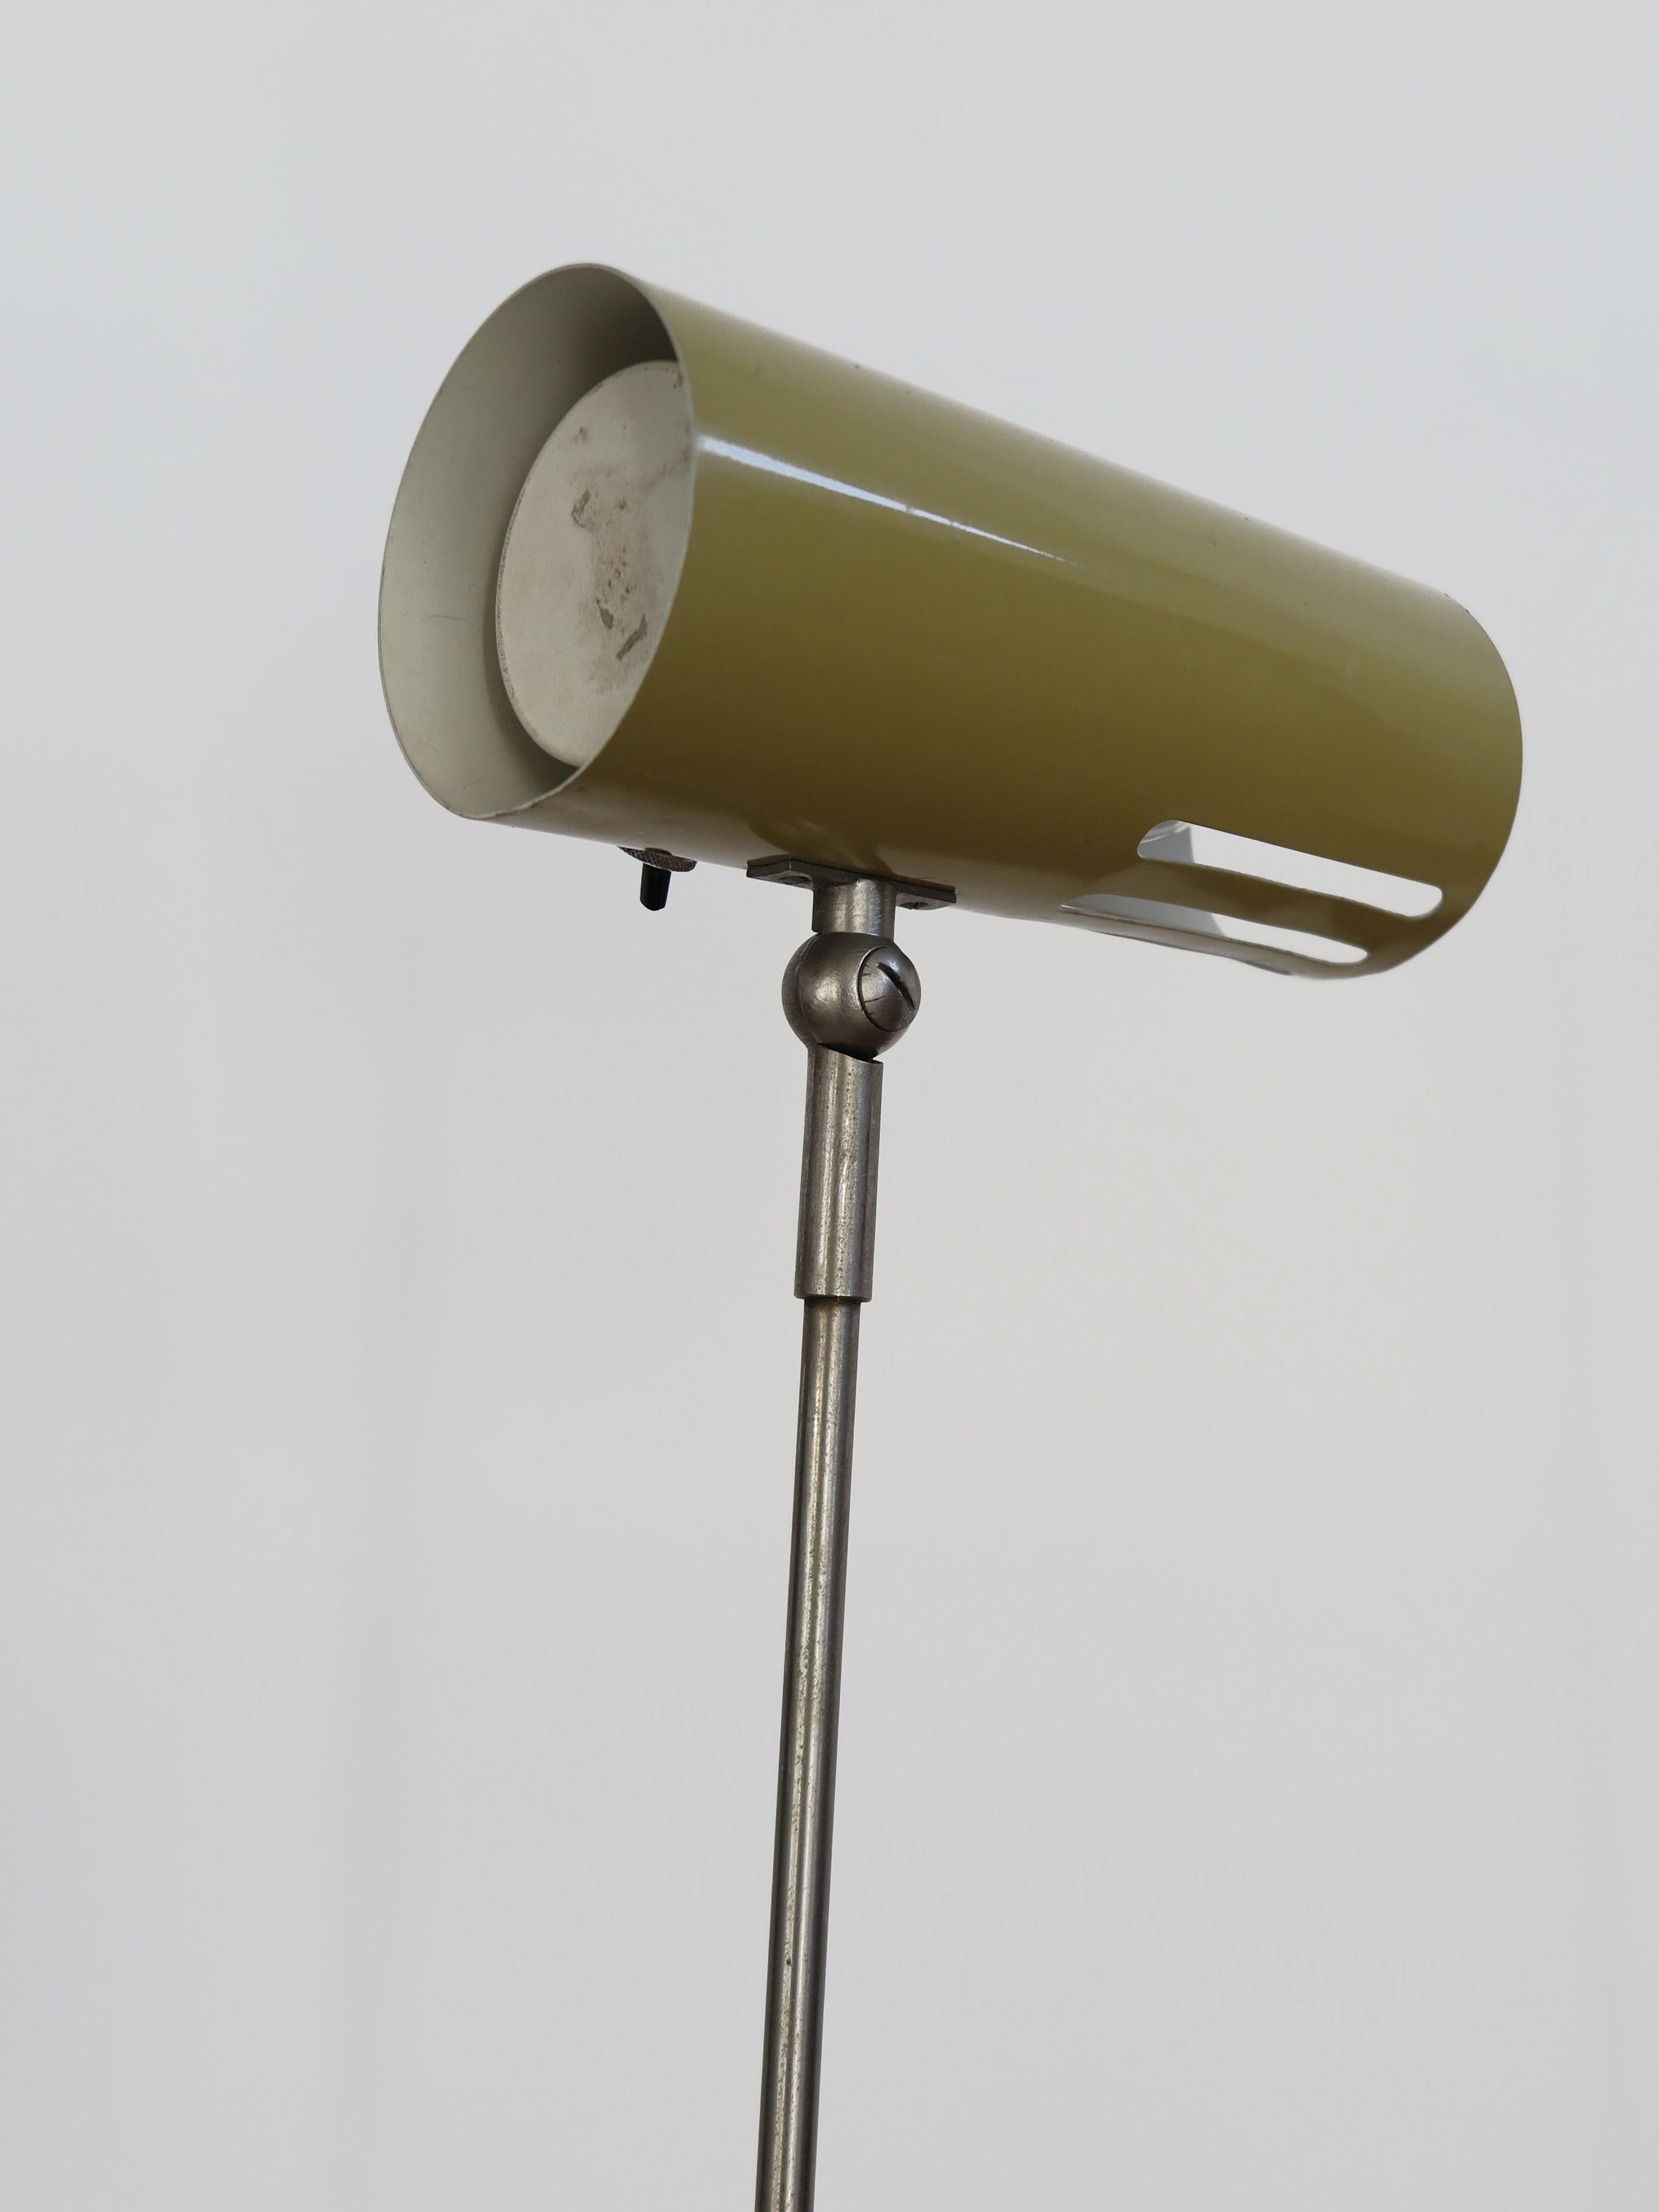 Italian Stilnovo Midcentury Modern Metal Clamp Table Lamp 1950s For Sale 8